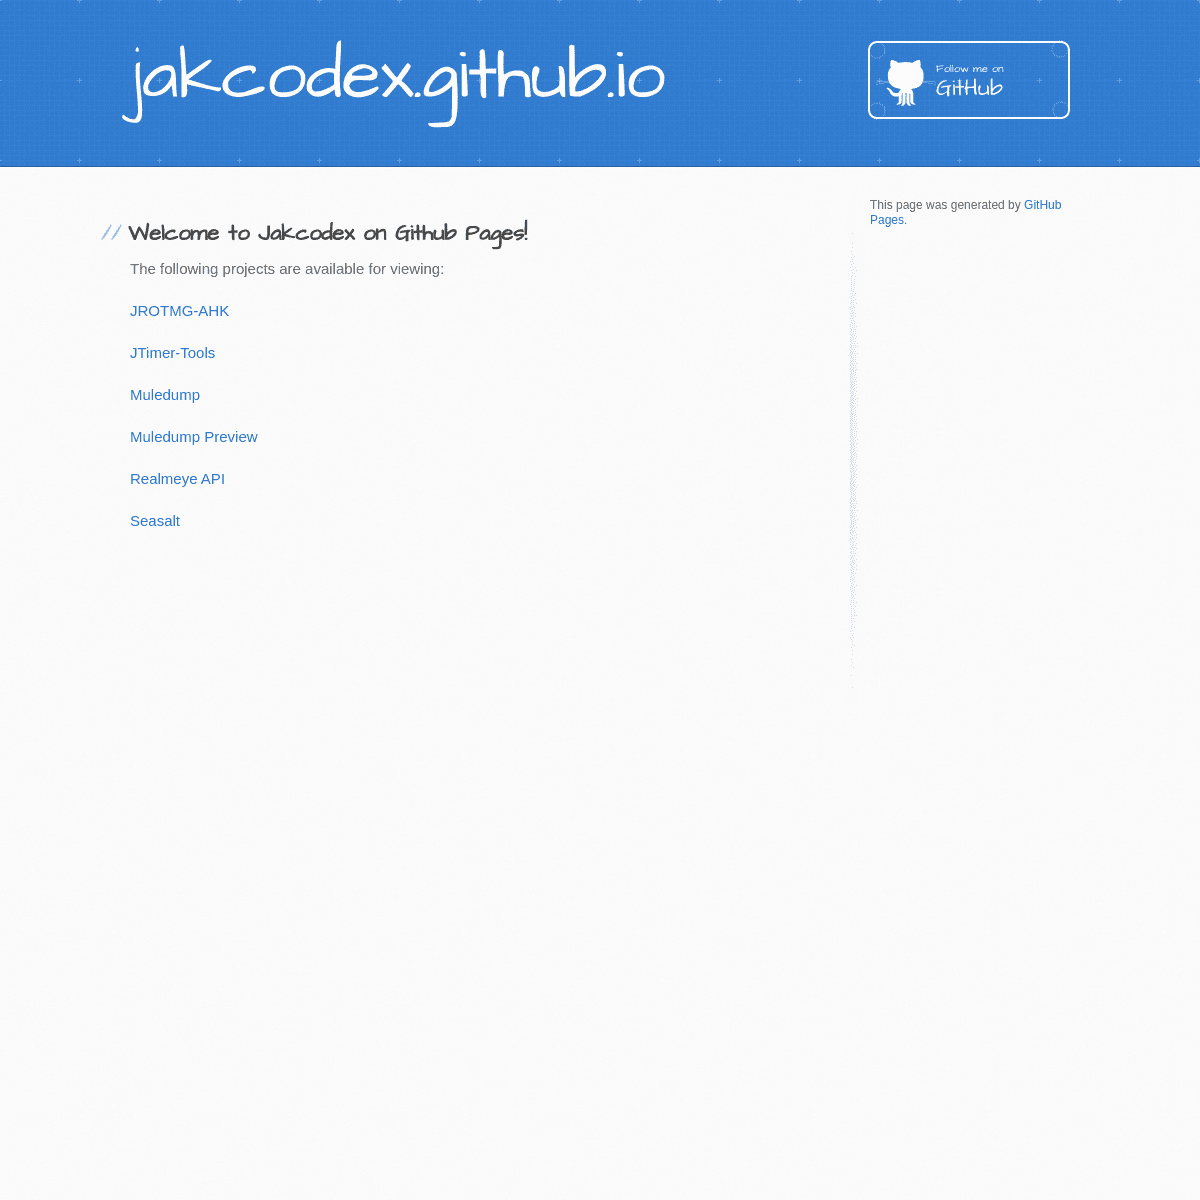 A complete backup of jakcodex.github.io